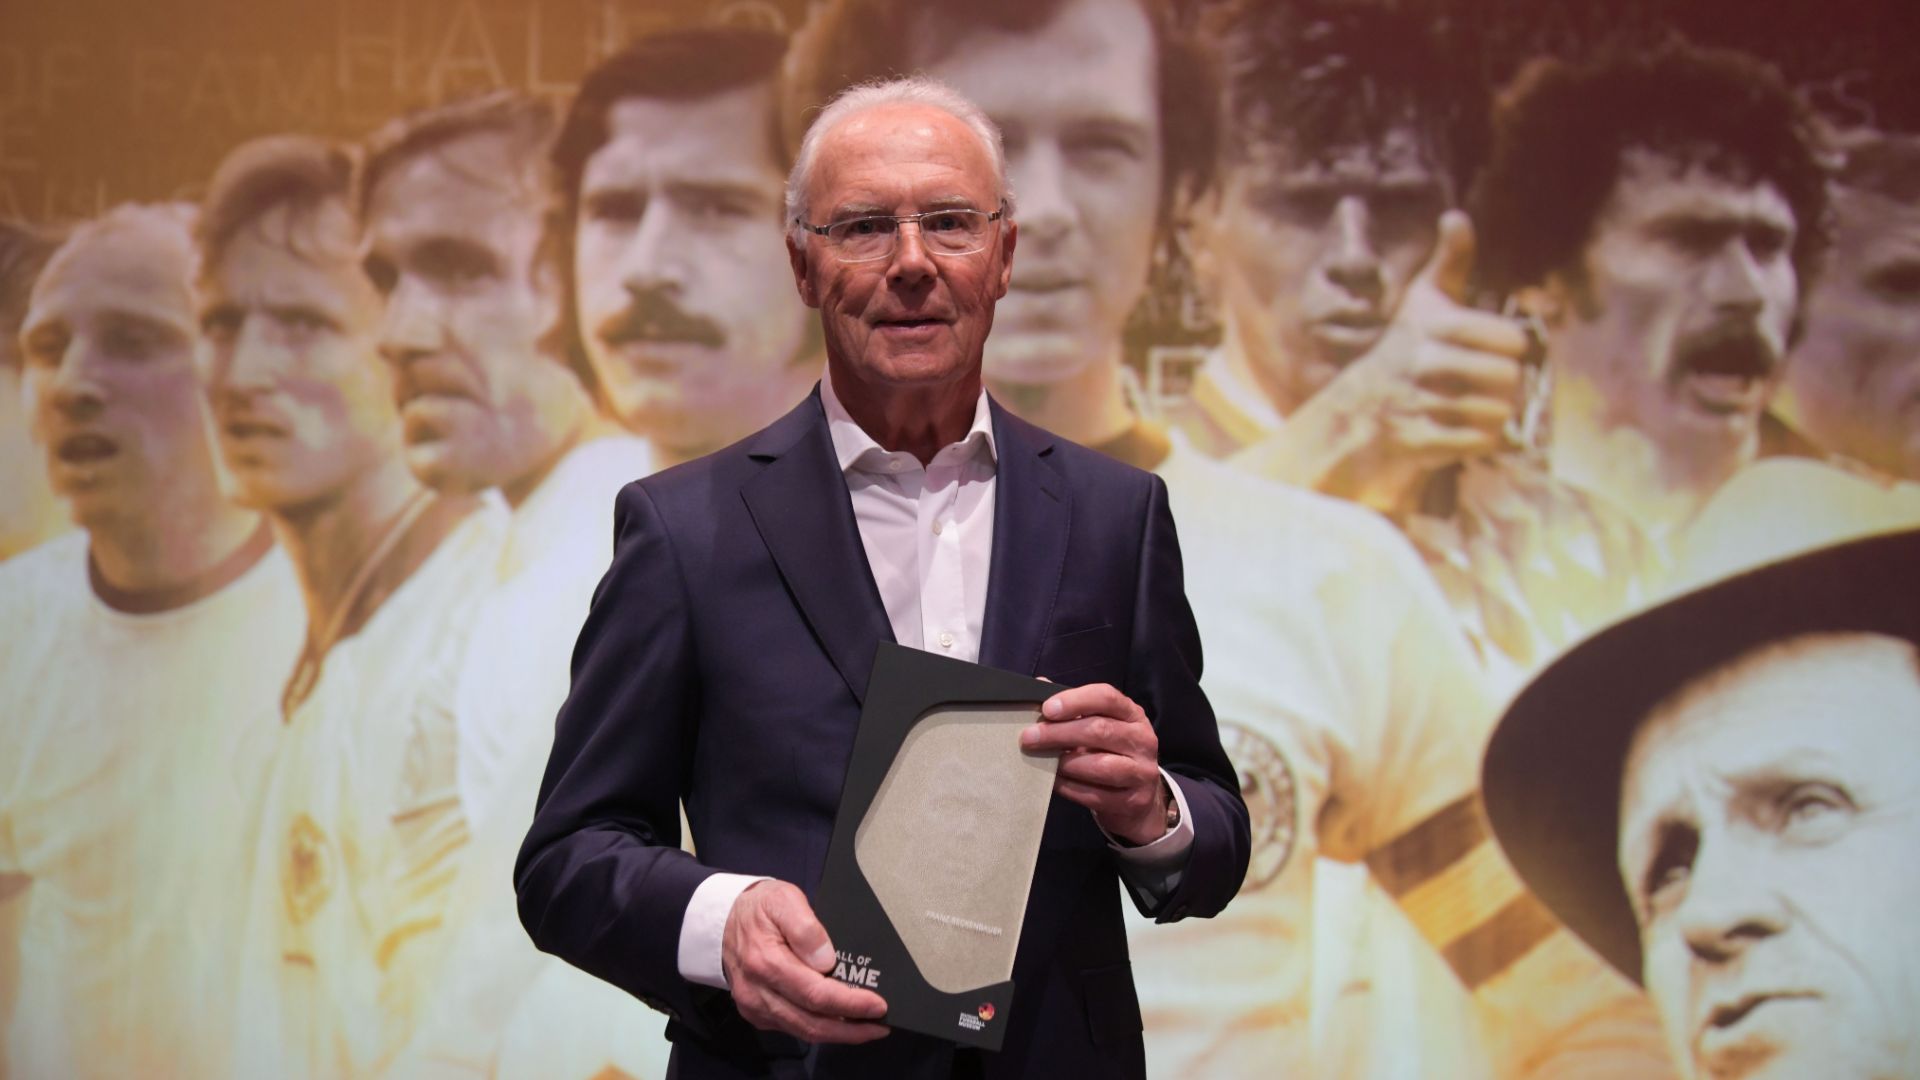 UEFA to honour Beckenbauer